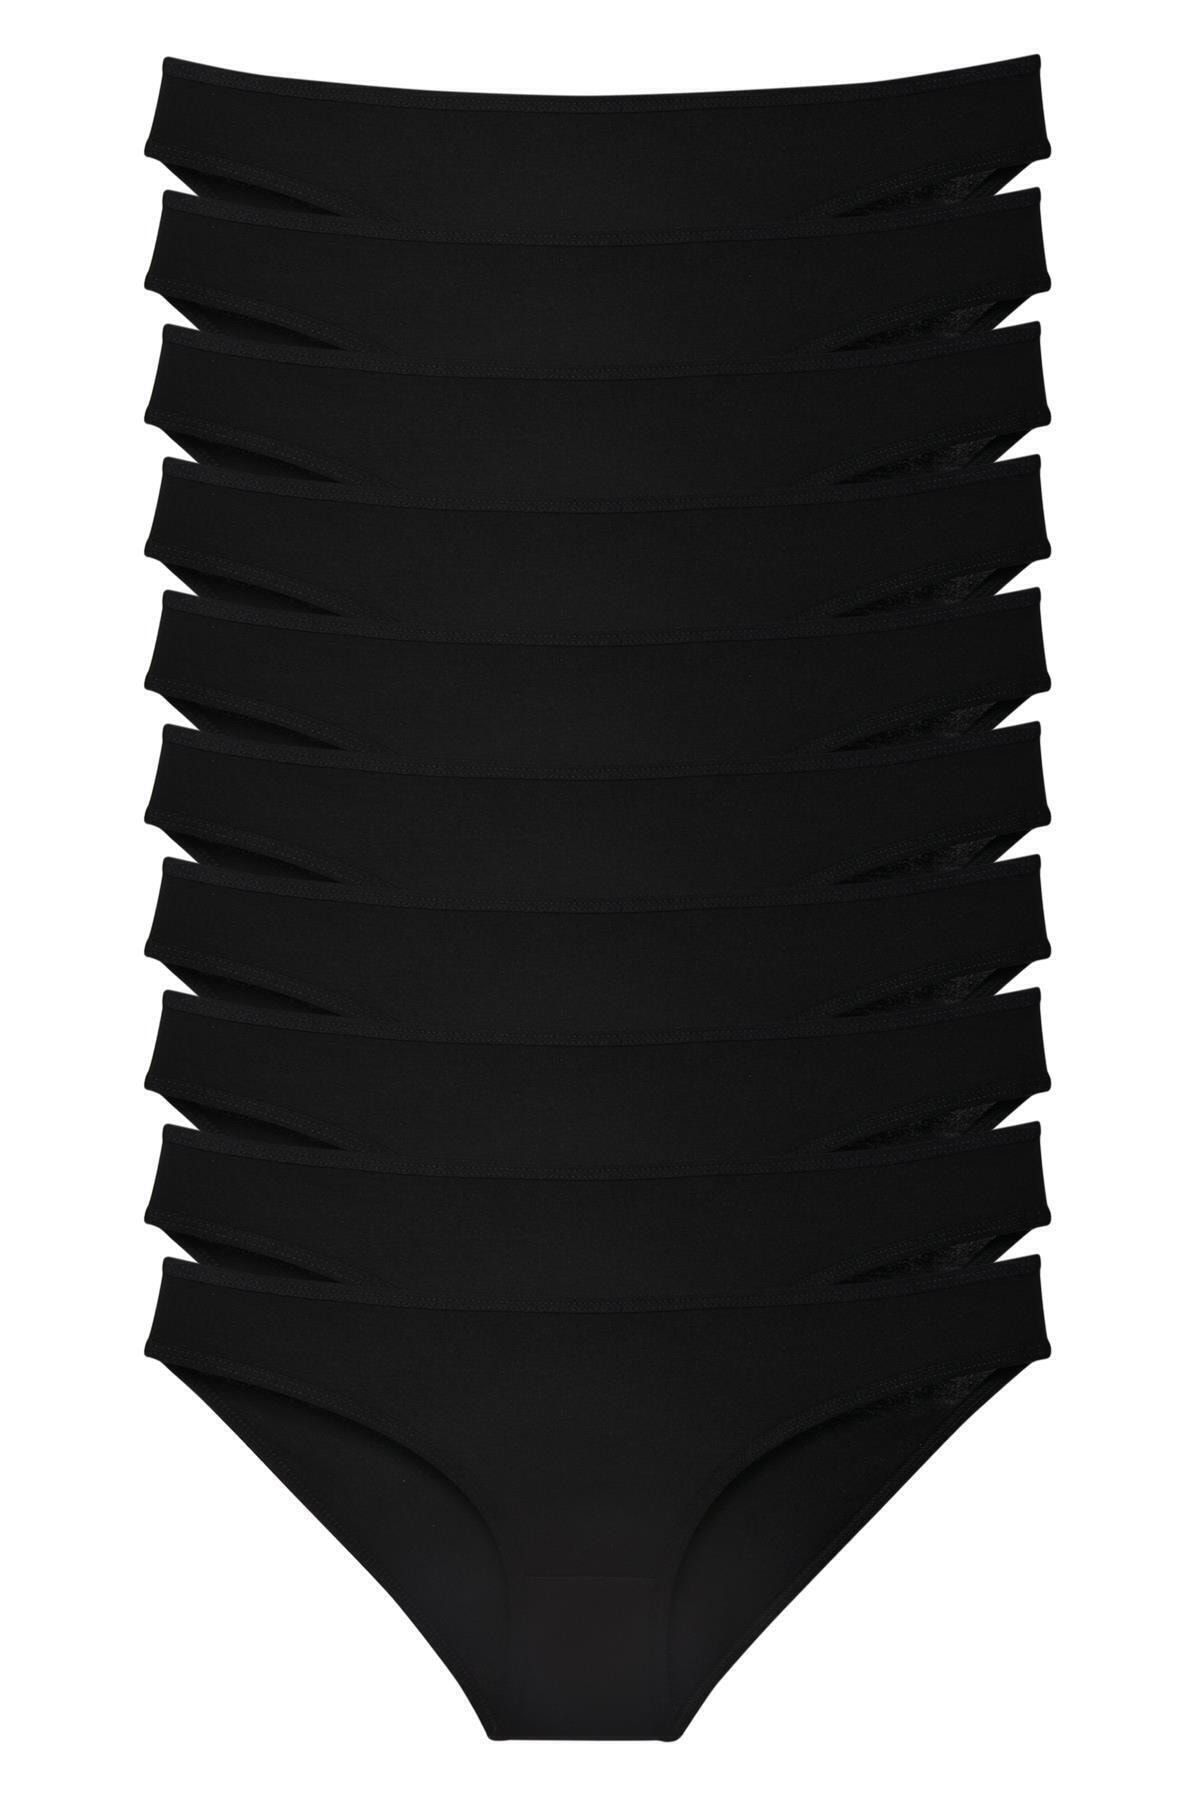 Genel Markalar Kadın Siyah Bikini Külot 10'lu Paket